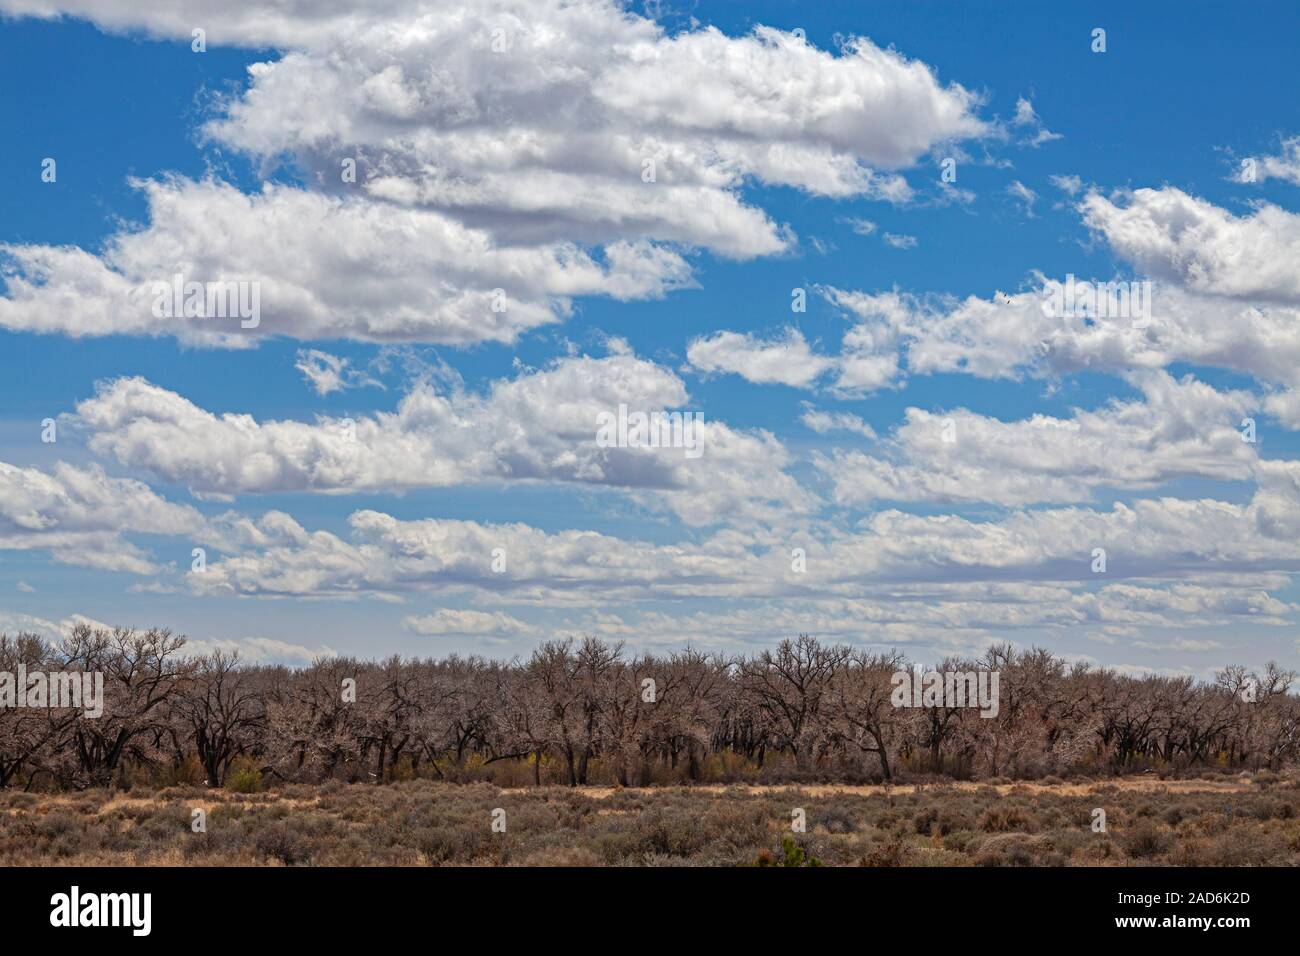 Pioppi neri americani di alberi che la linea del Rio Grande con il Sandia Mountains nella rassegna di Albuquerque, Nuovo Messico, STATI UNITI D'AMERICA Foto Stock